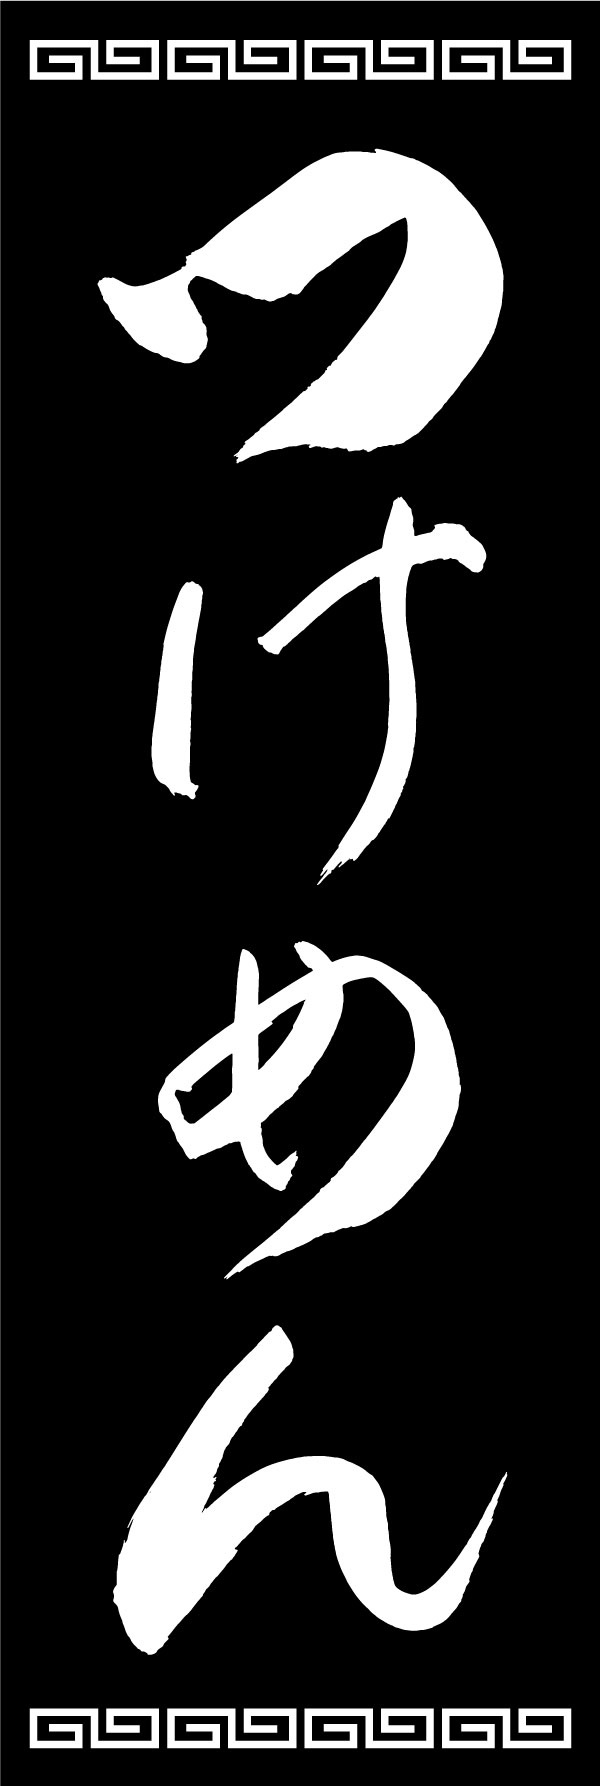 つけ麺 139_07 「つけめん」ののぼりです。江戸文字職人 加藤木大介氏による、手書きの筆文字です。完全書き下ろし、唯一無二ののぼりは当店だけのオリジナル商品です。（Y.M）